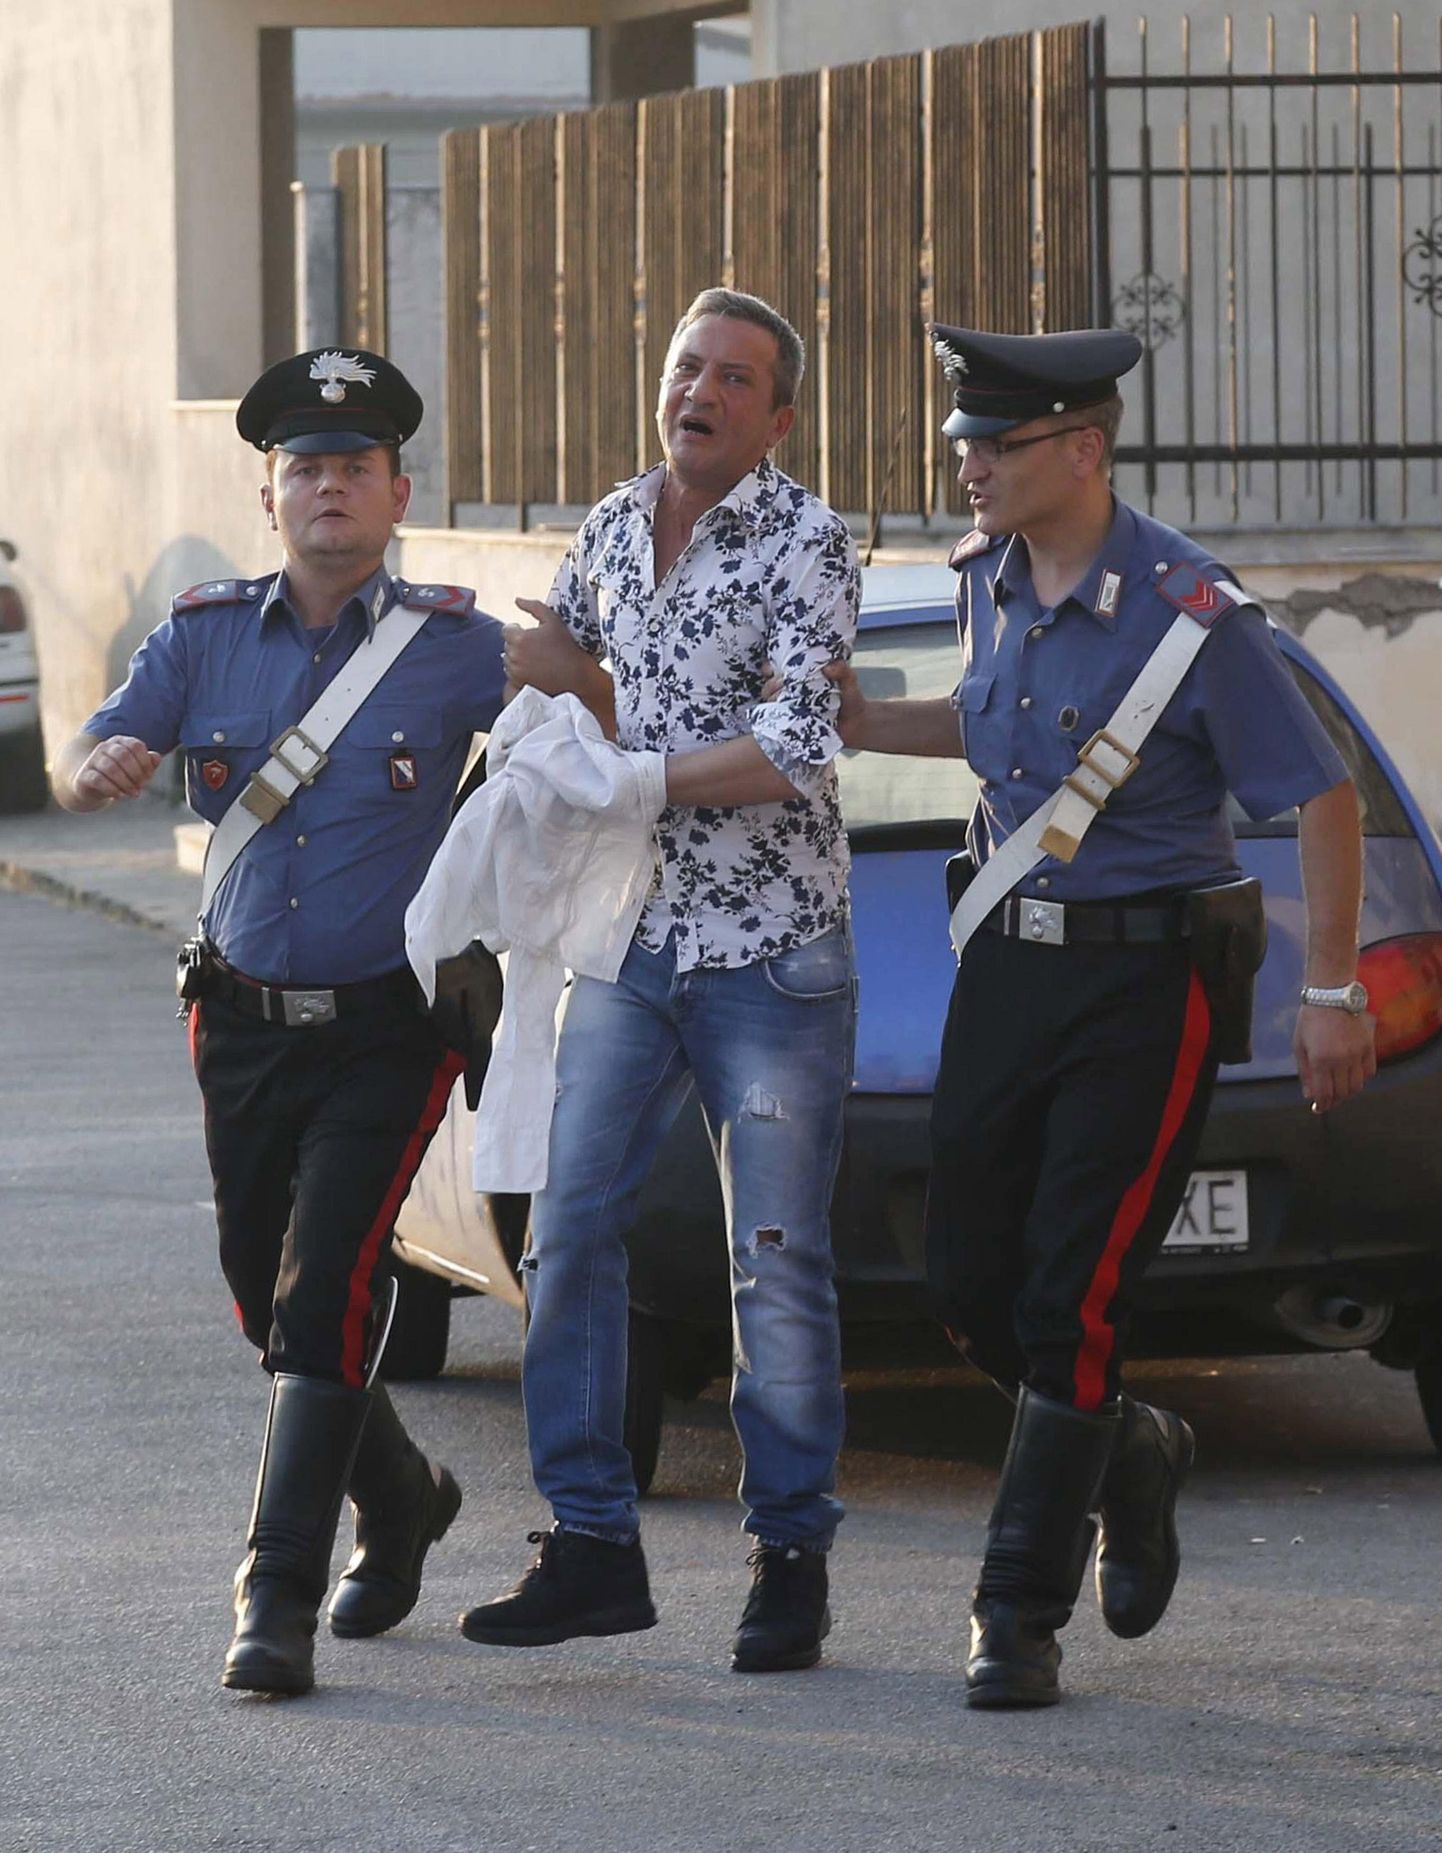 Itaalia politsei arreteerimas organiseeritud kuritegevusega seotud isikut